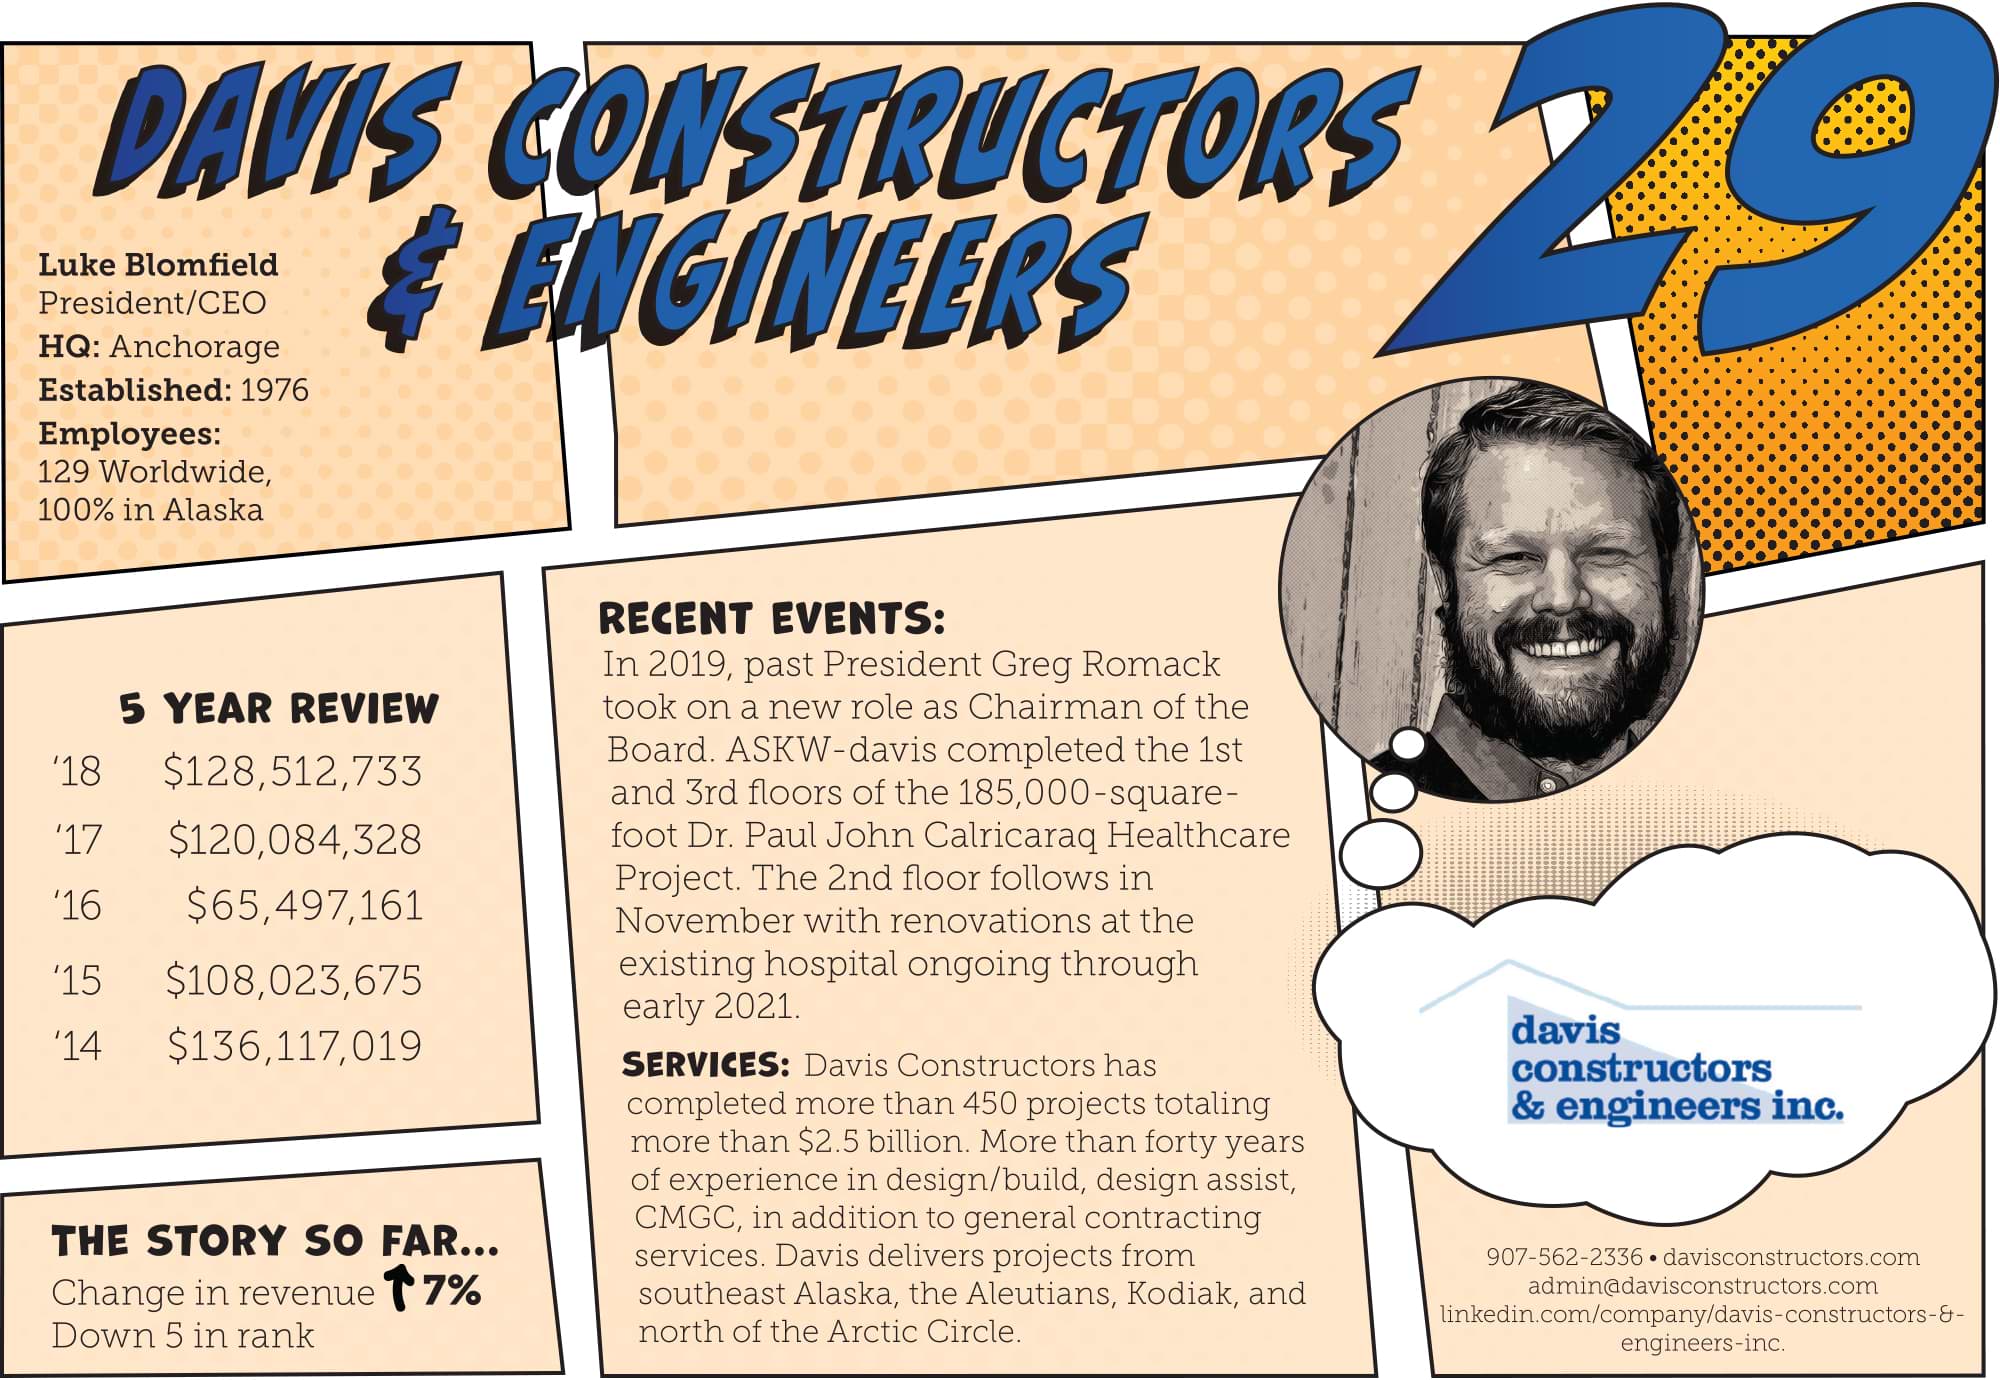 Davis Constructors & Engineers